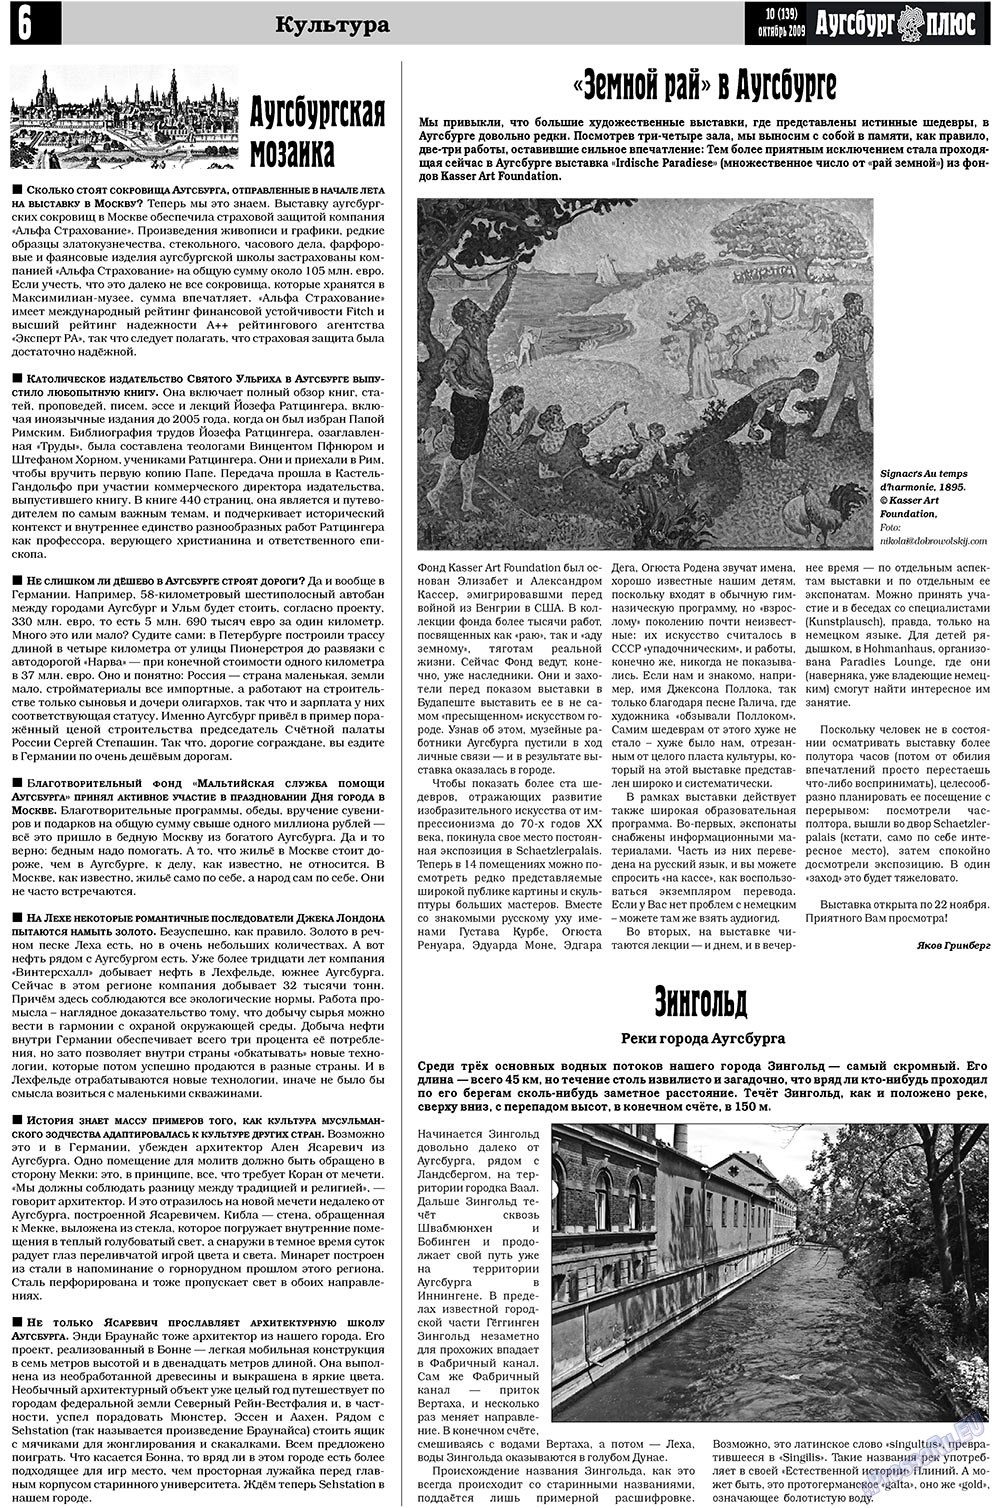 Германия плюс, газета. 2009 №10 стр.22